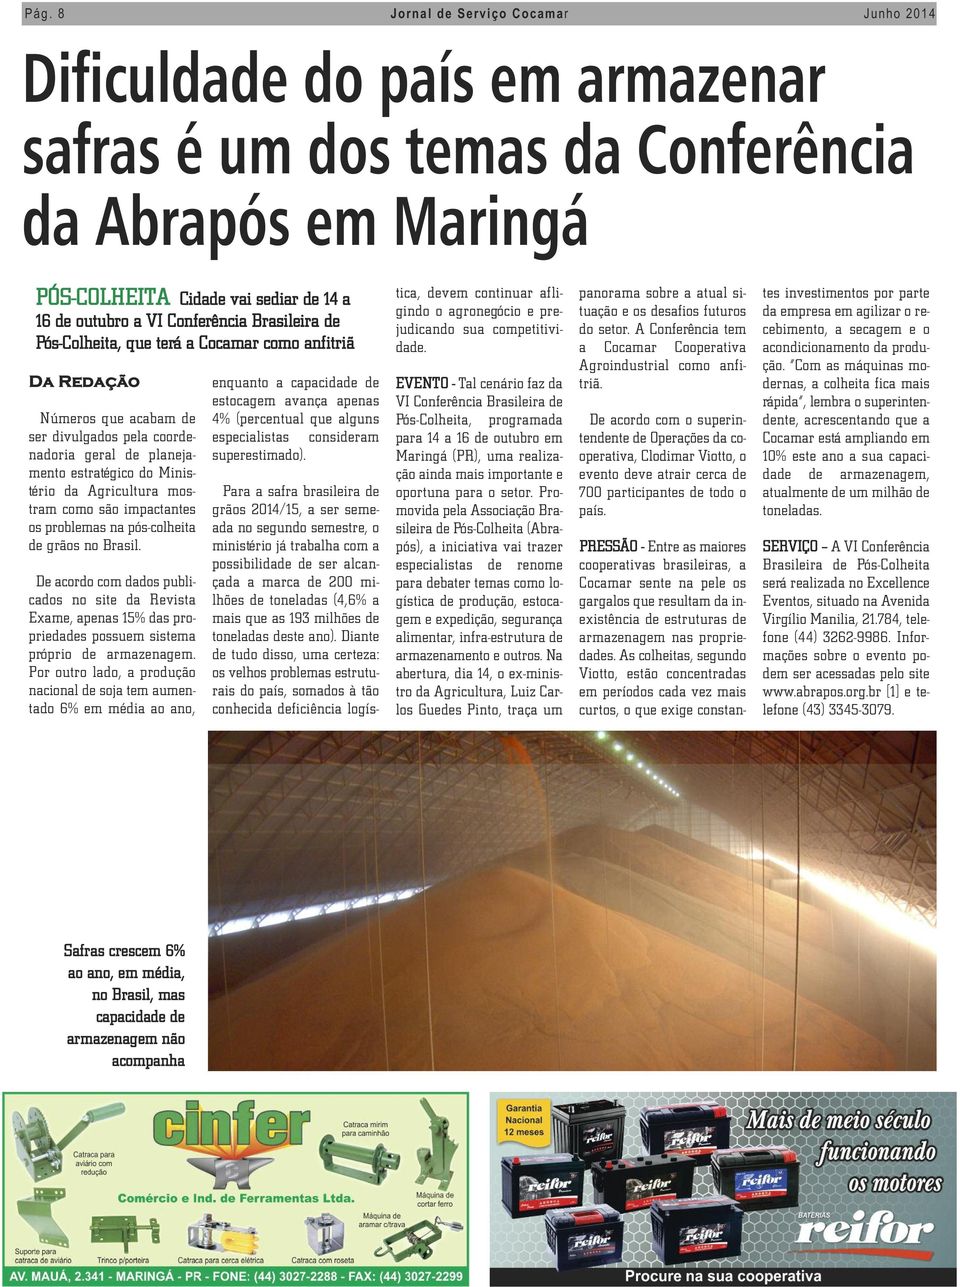 Agricultura mostram como são impactantes os problemas na pós-colheita de grãos no Brasil.